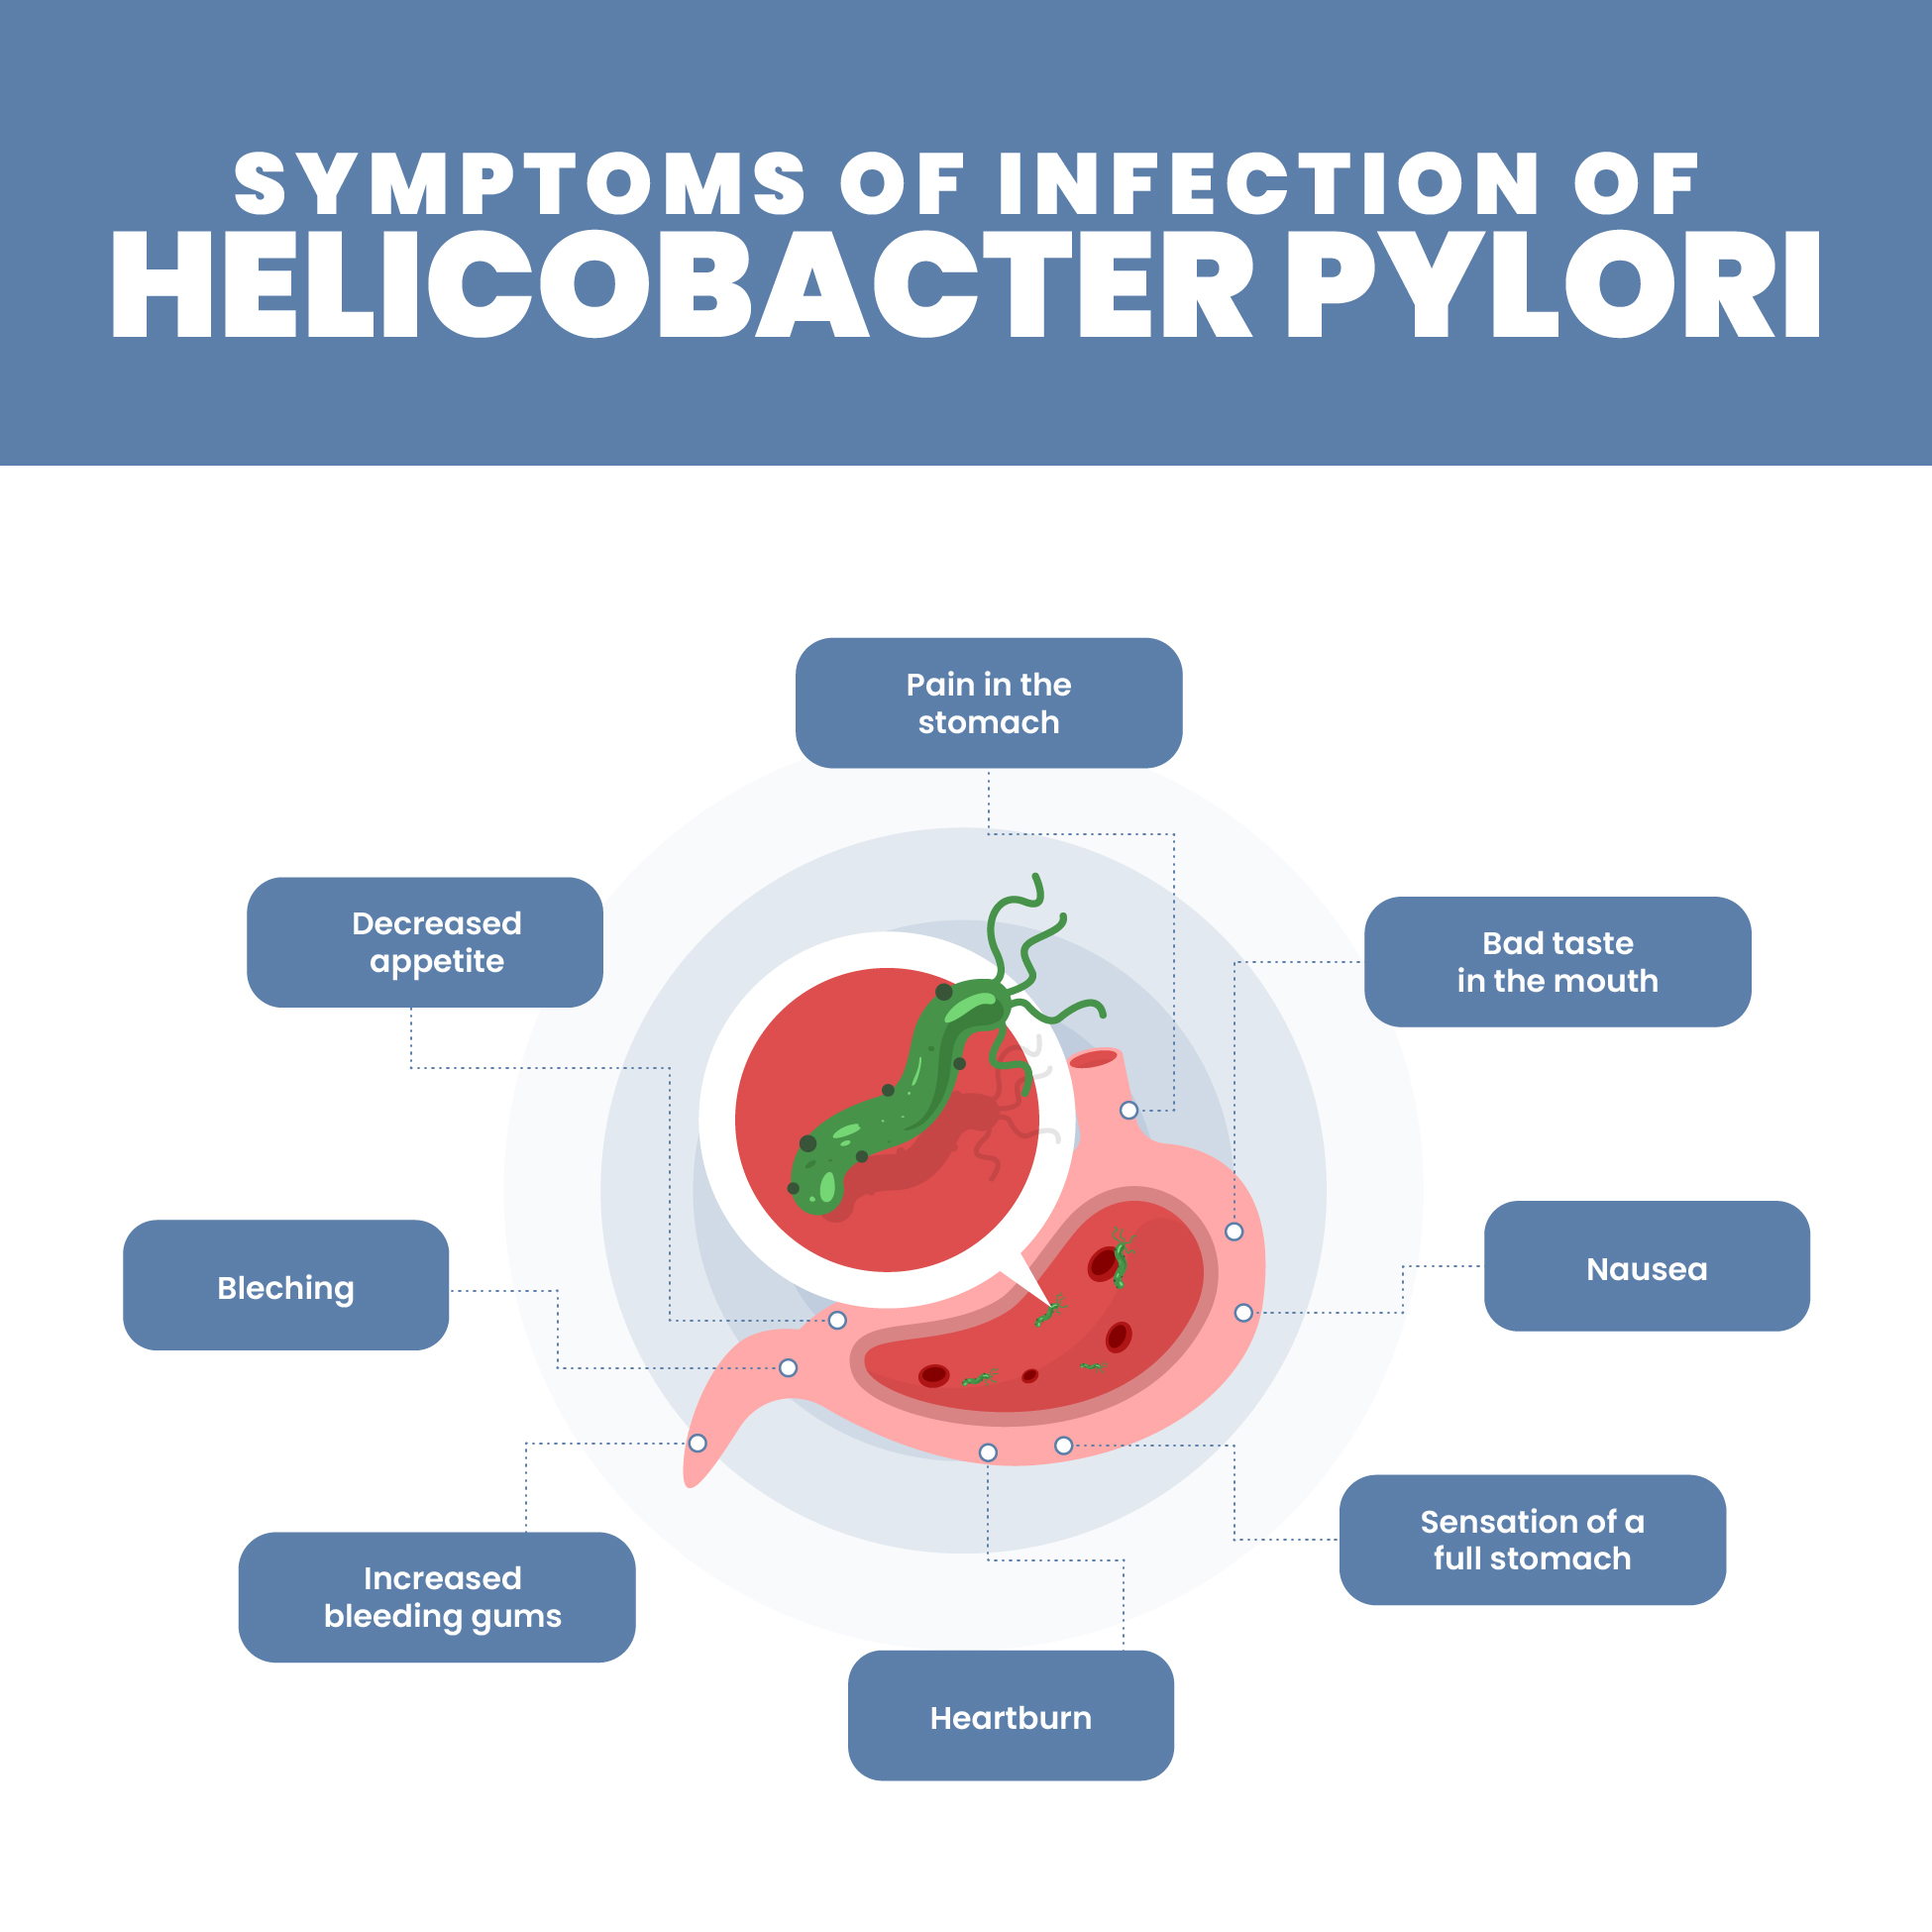 Pylori Infection Symptoms